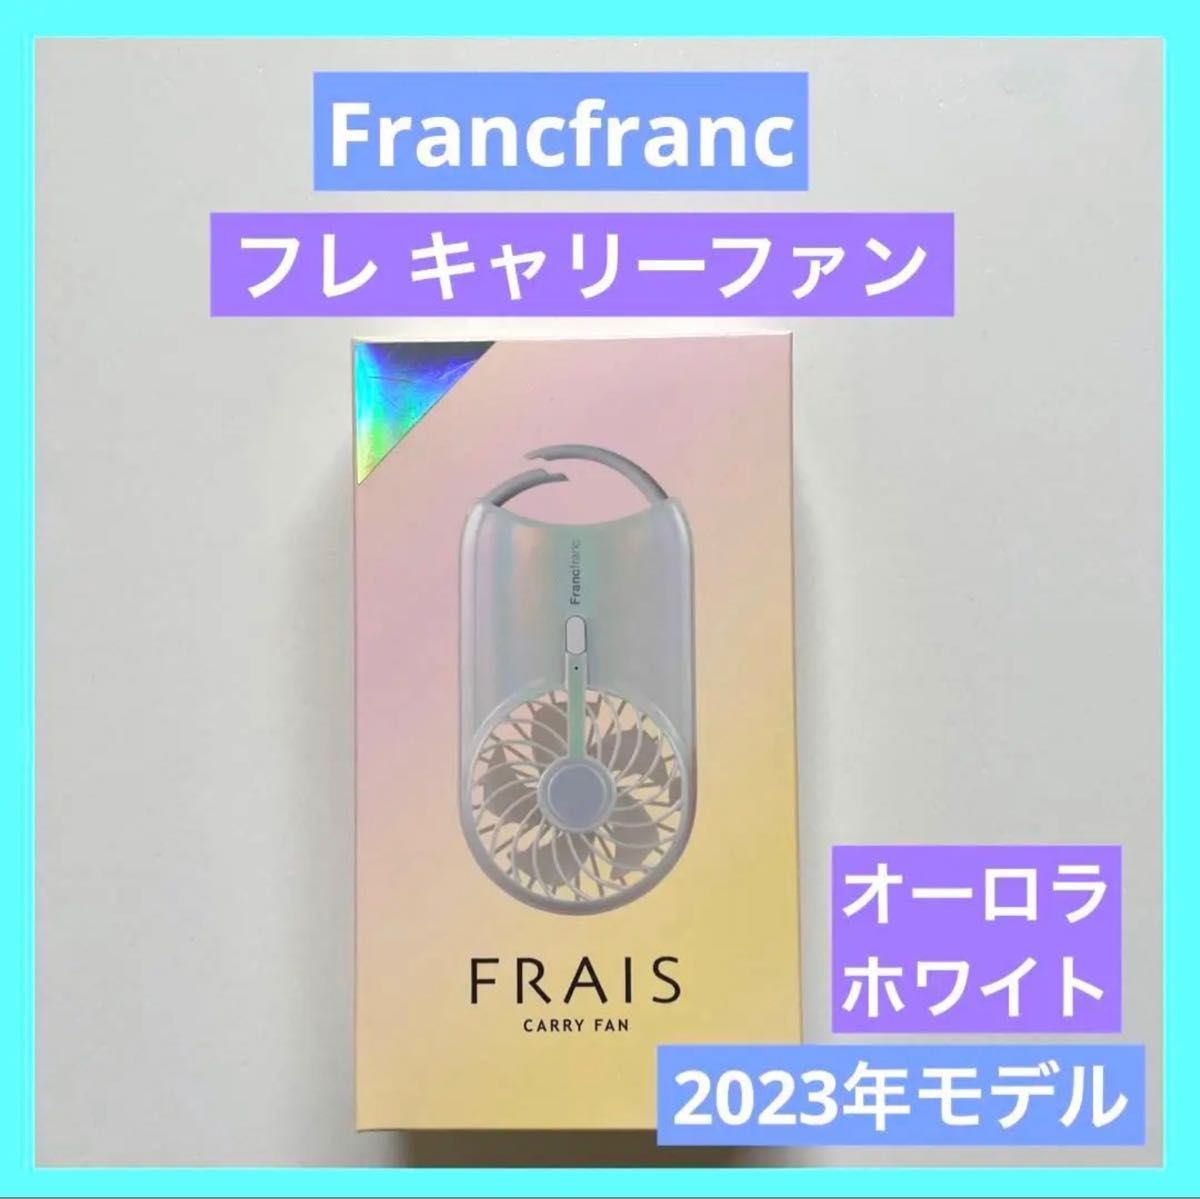 Francfranc フレ キャリーファン オーロラ ホワイト フランフラン